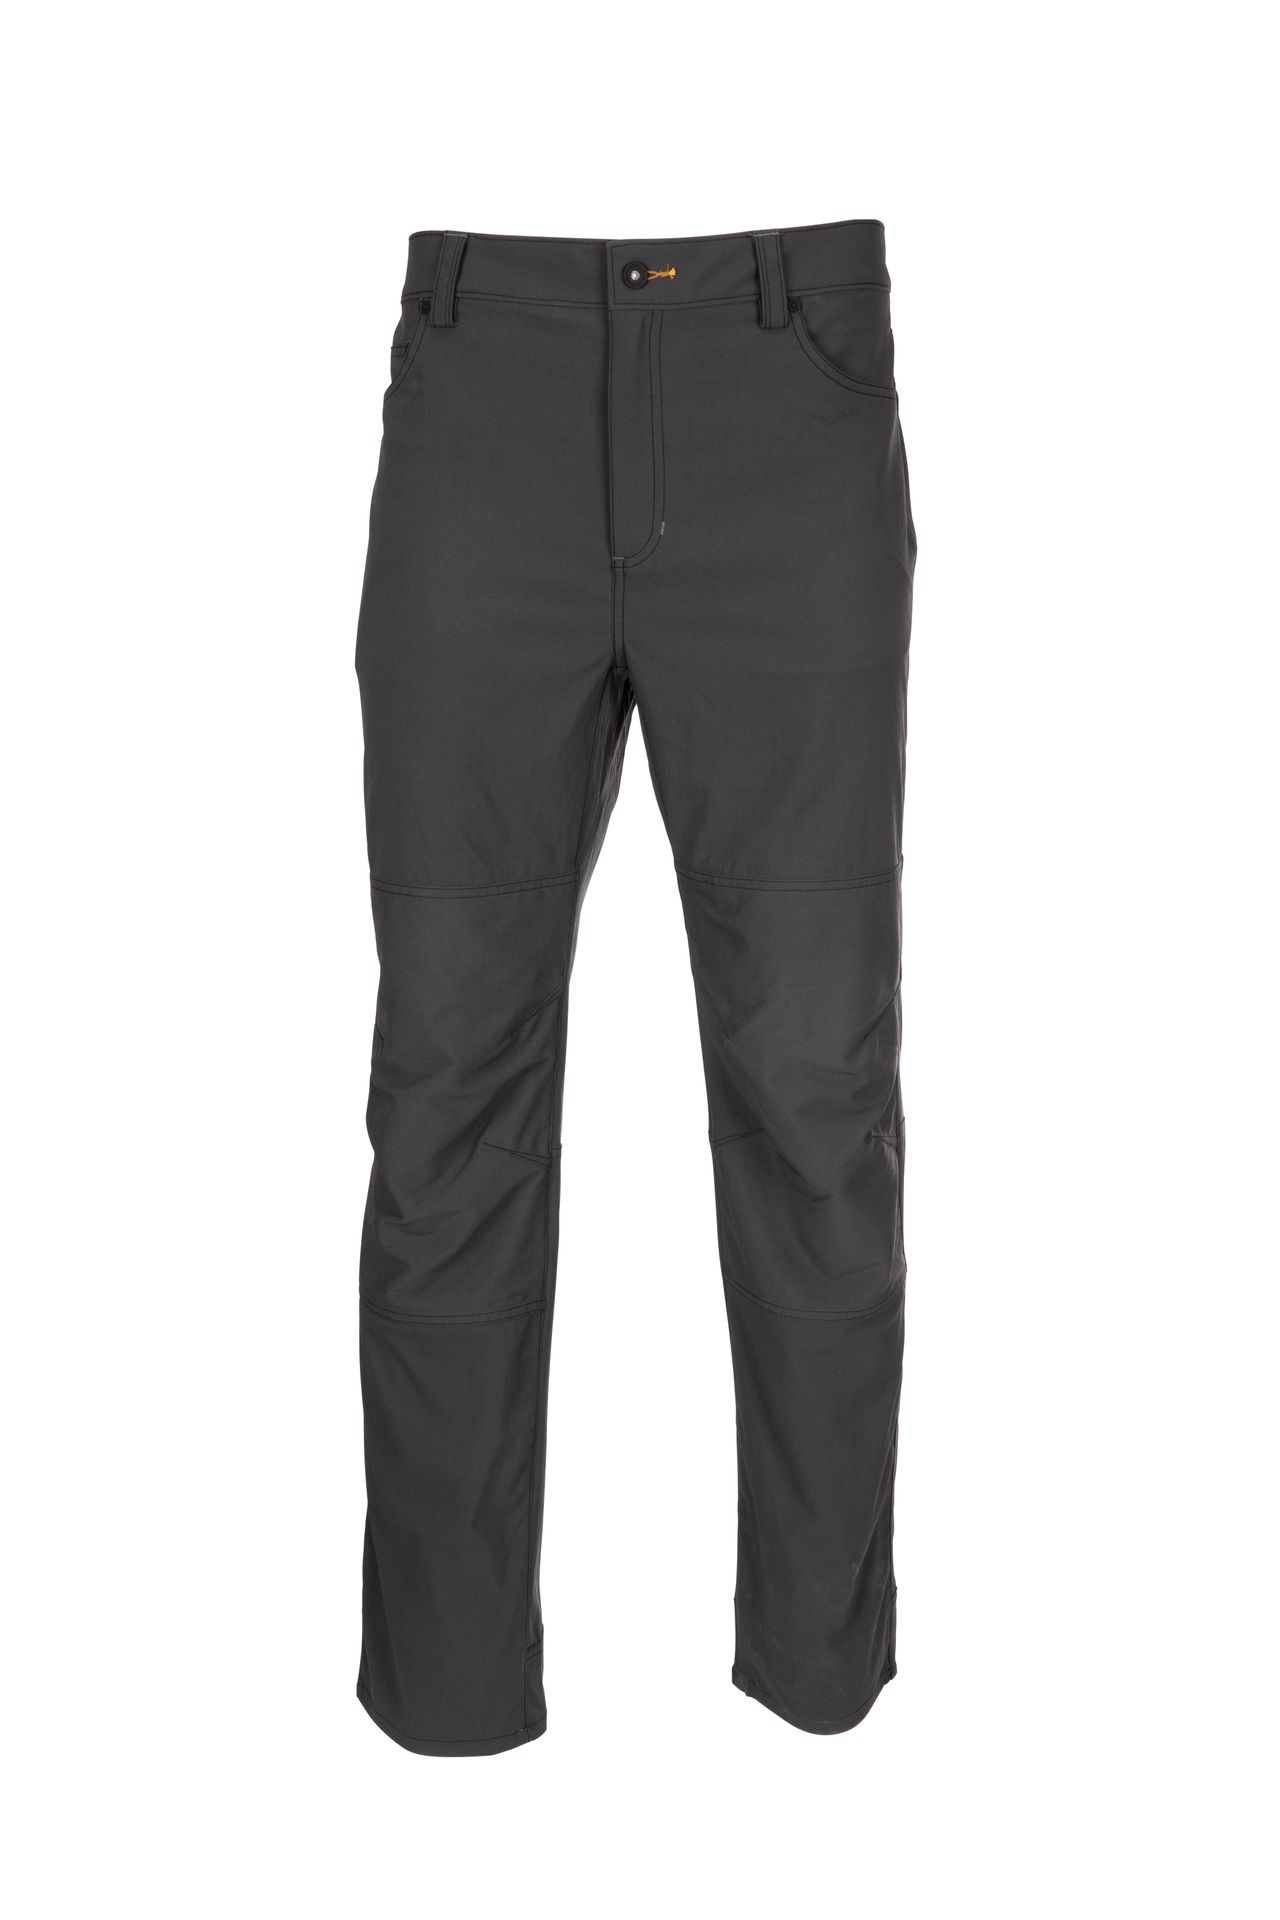 Simms - Dockwear Pant Carbon 36" waist - Regular length